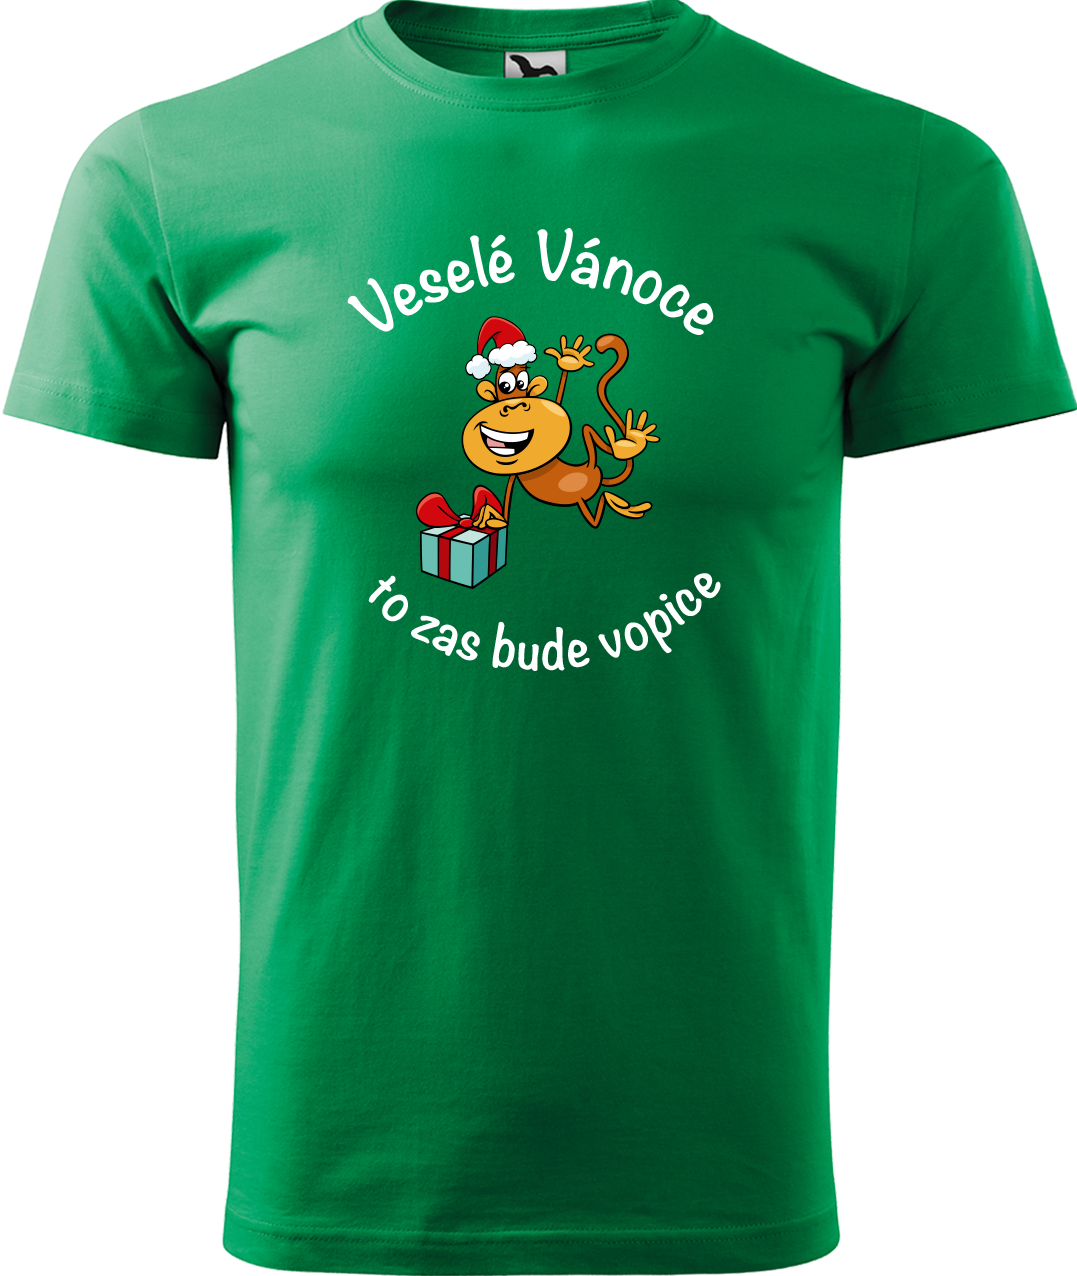 Pánské vánoční tričko - Veselé Vánoce to zas bude vopice Velikost: XL, Barva: Středně zelená (16)